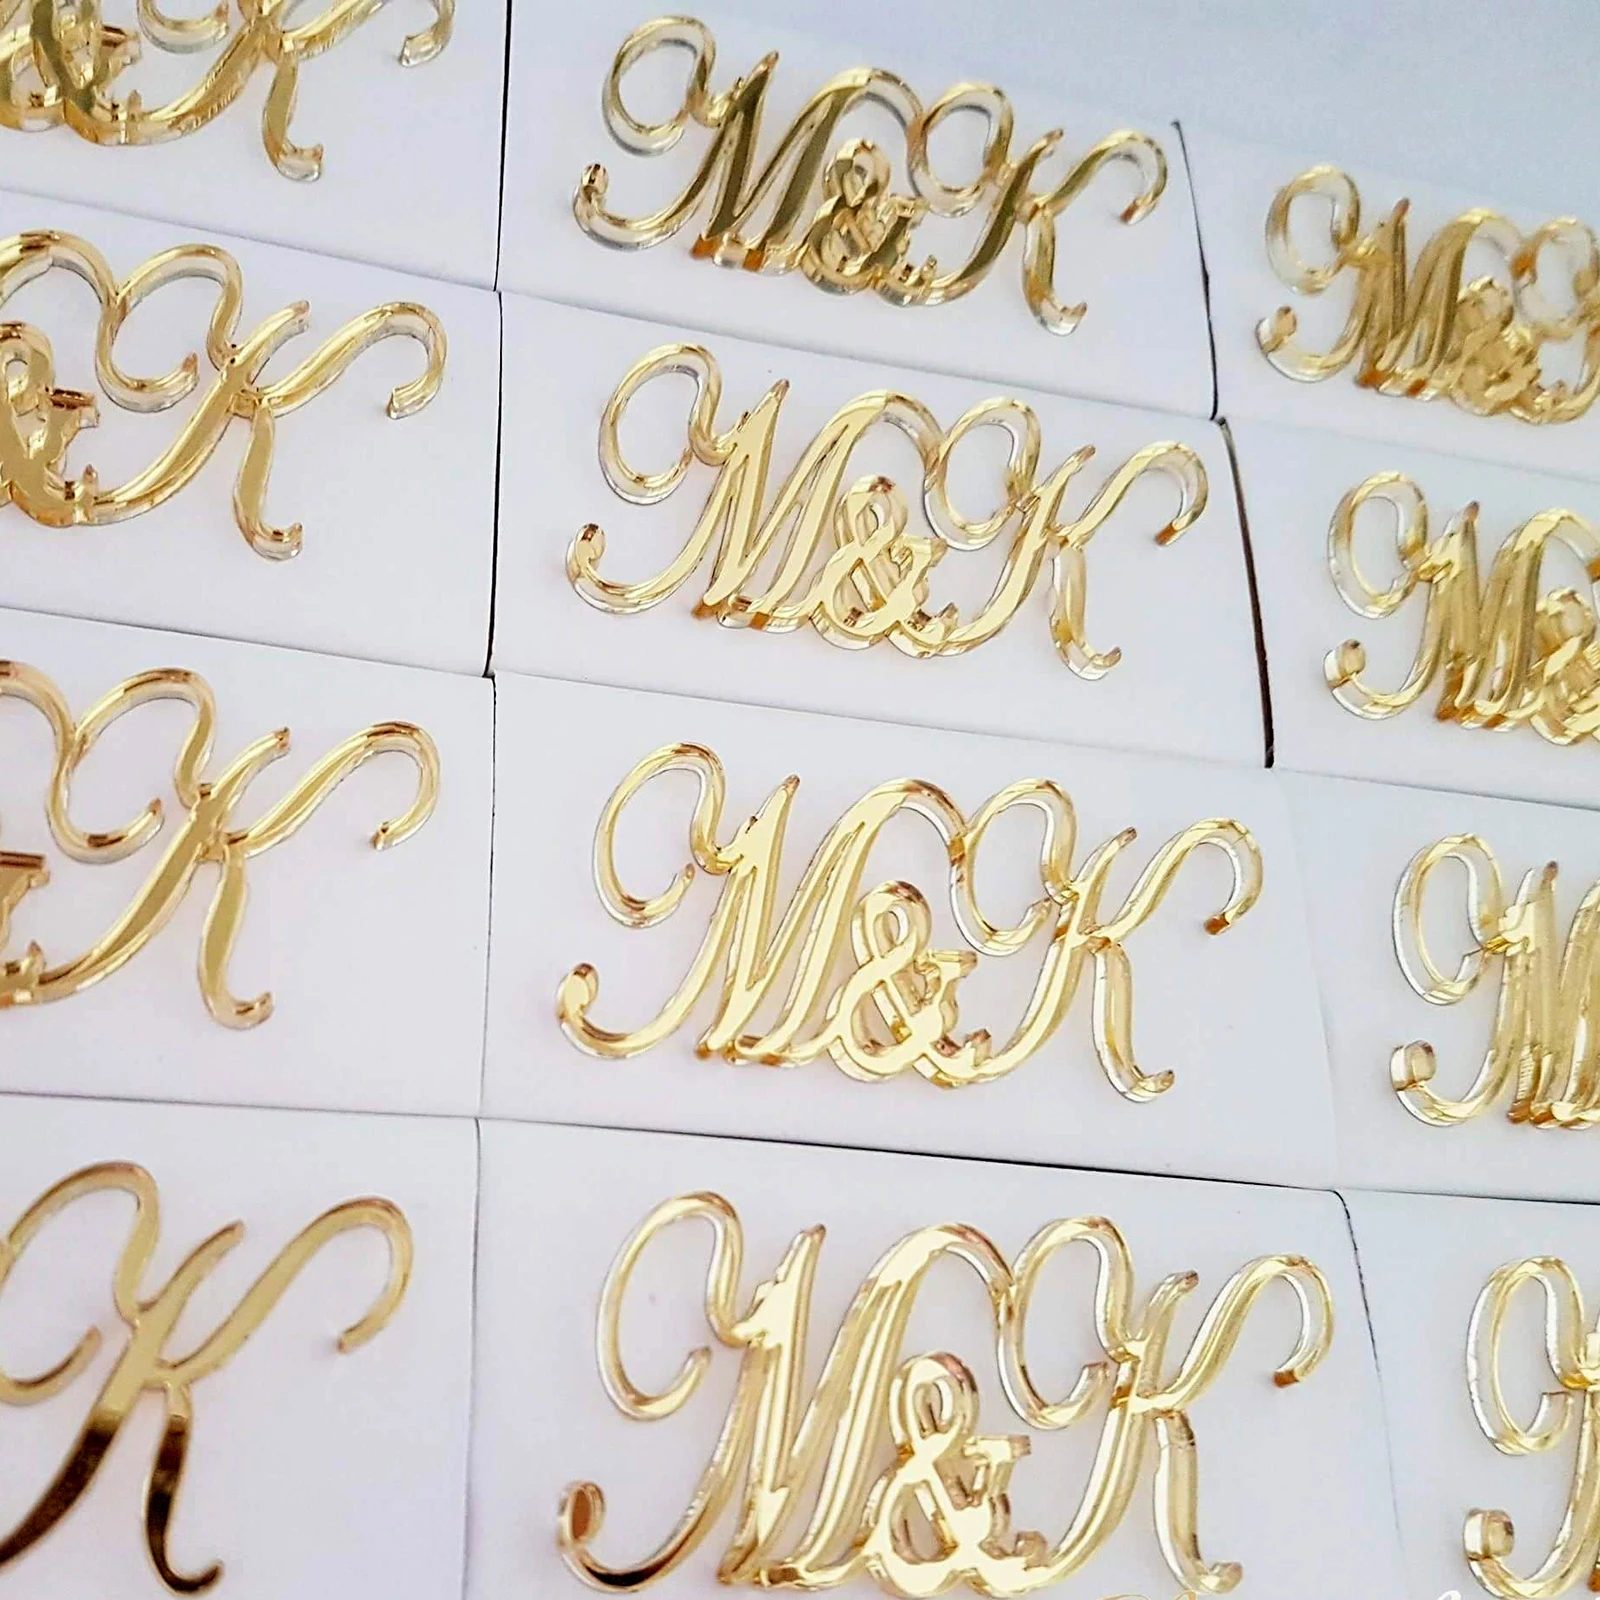 12 шт. персонализированные Великолепные акриловые золотые таблички Свадебные логотипы Украшенные шоколадные пары названия коробка баннер юбилей сувениры